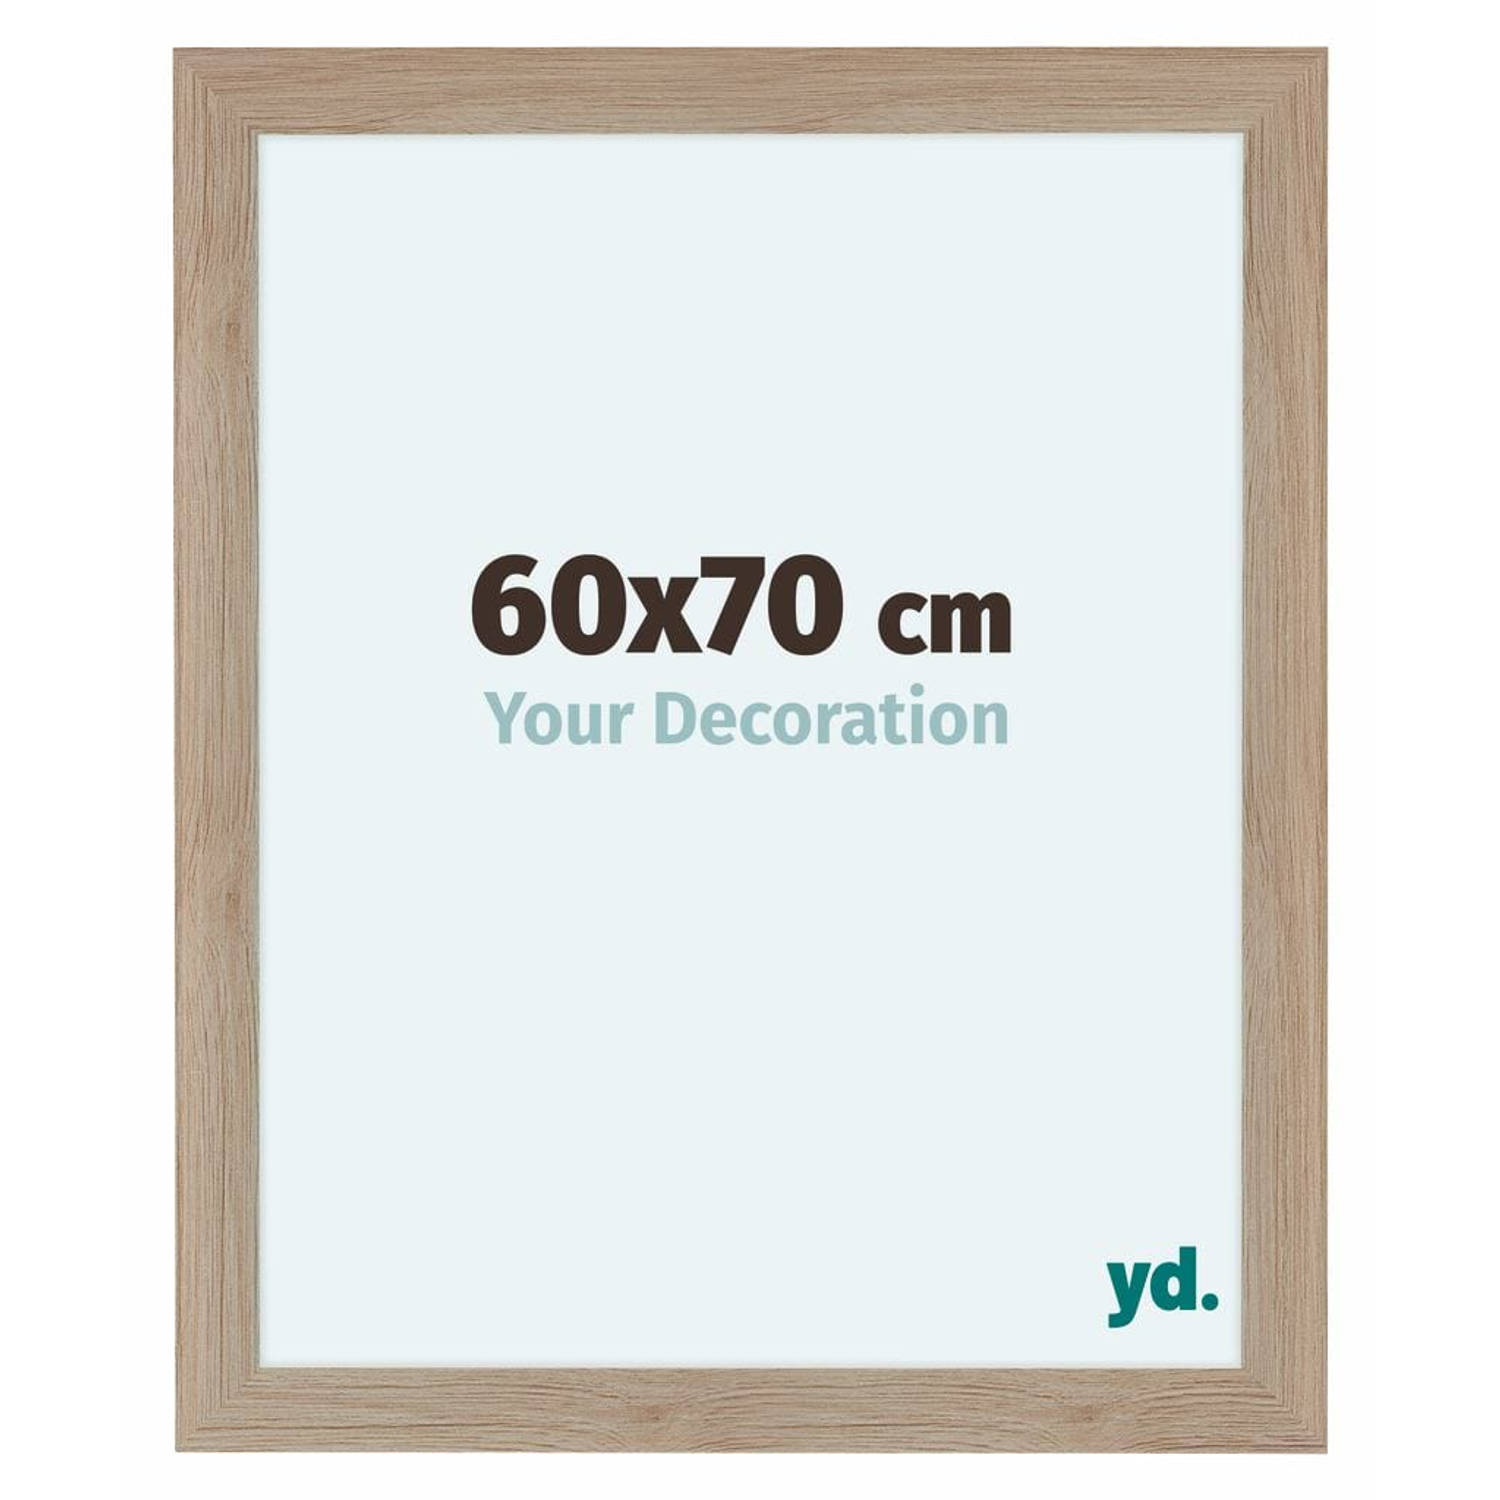 Your Decoration Como Mdf Fotolijst 60x70cm Eiken Licht - Bruin